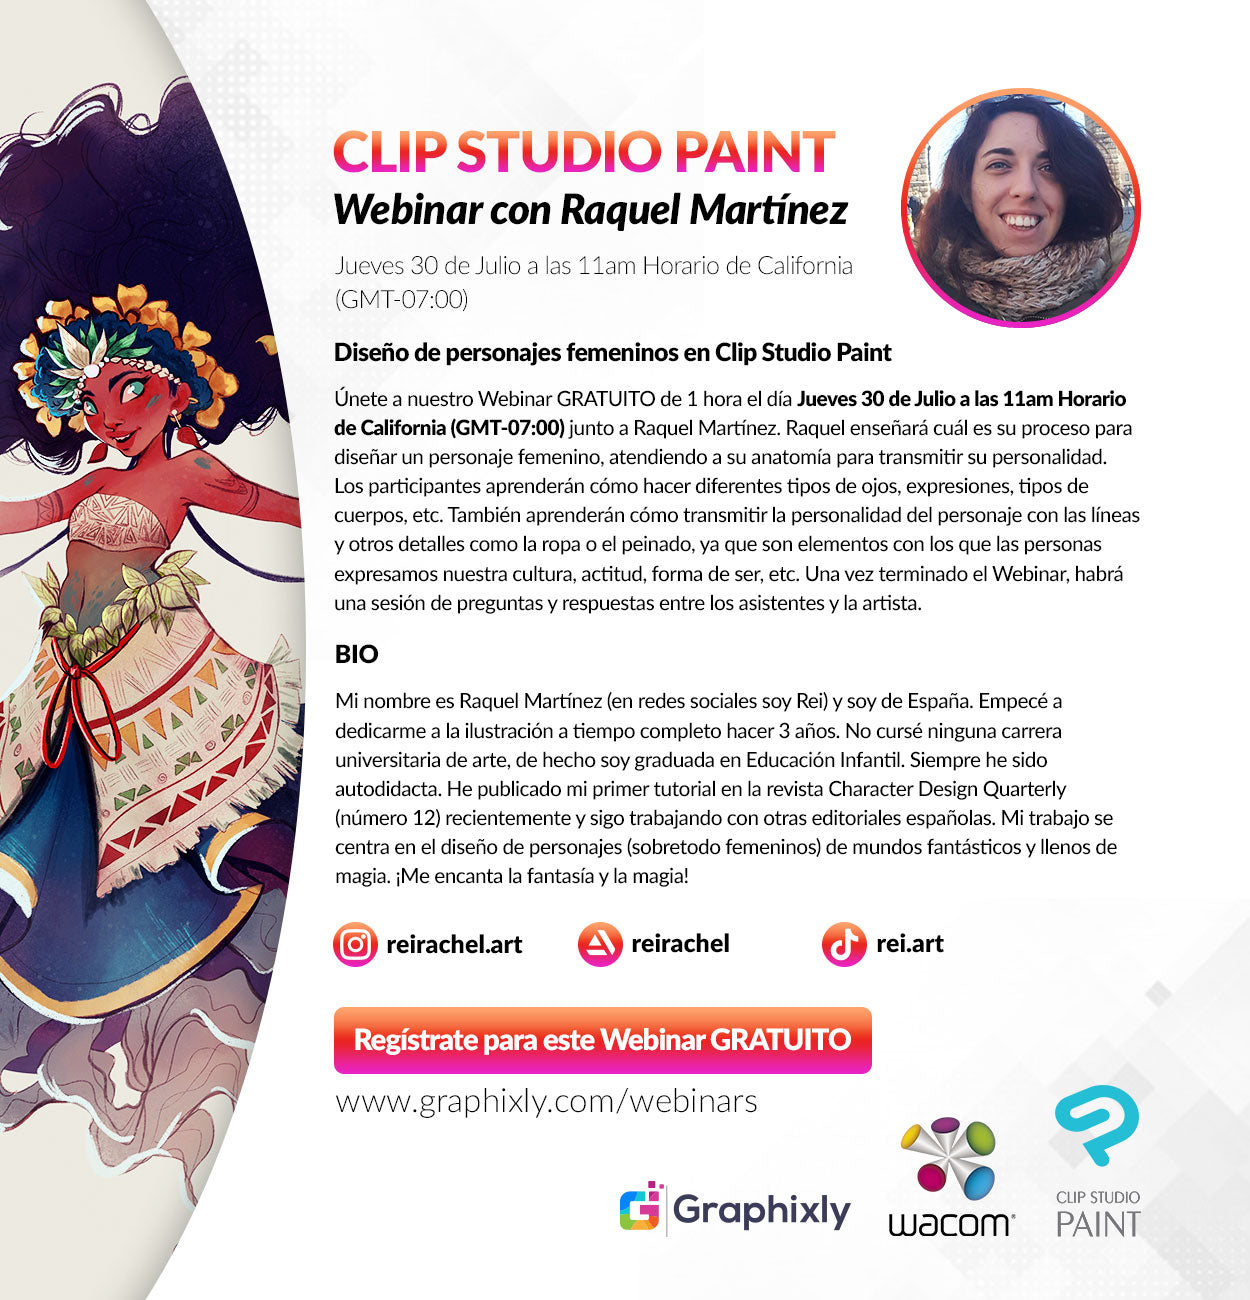 Webinar en español - Diseño de personajes femeninos en Clip Studio Paint con Raquel Martínez